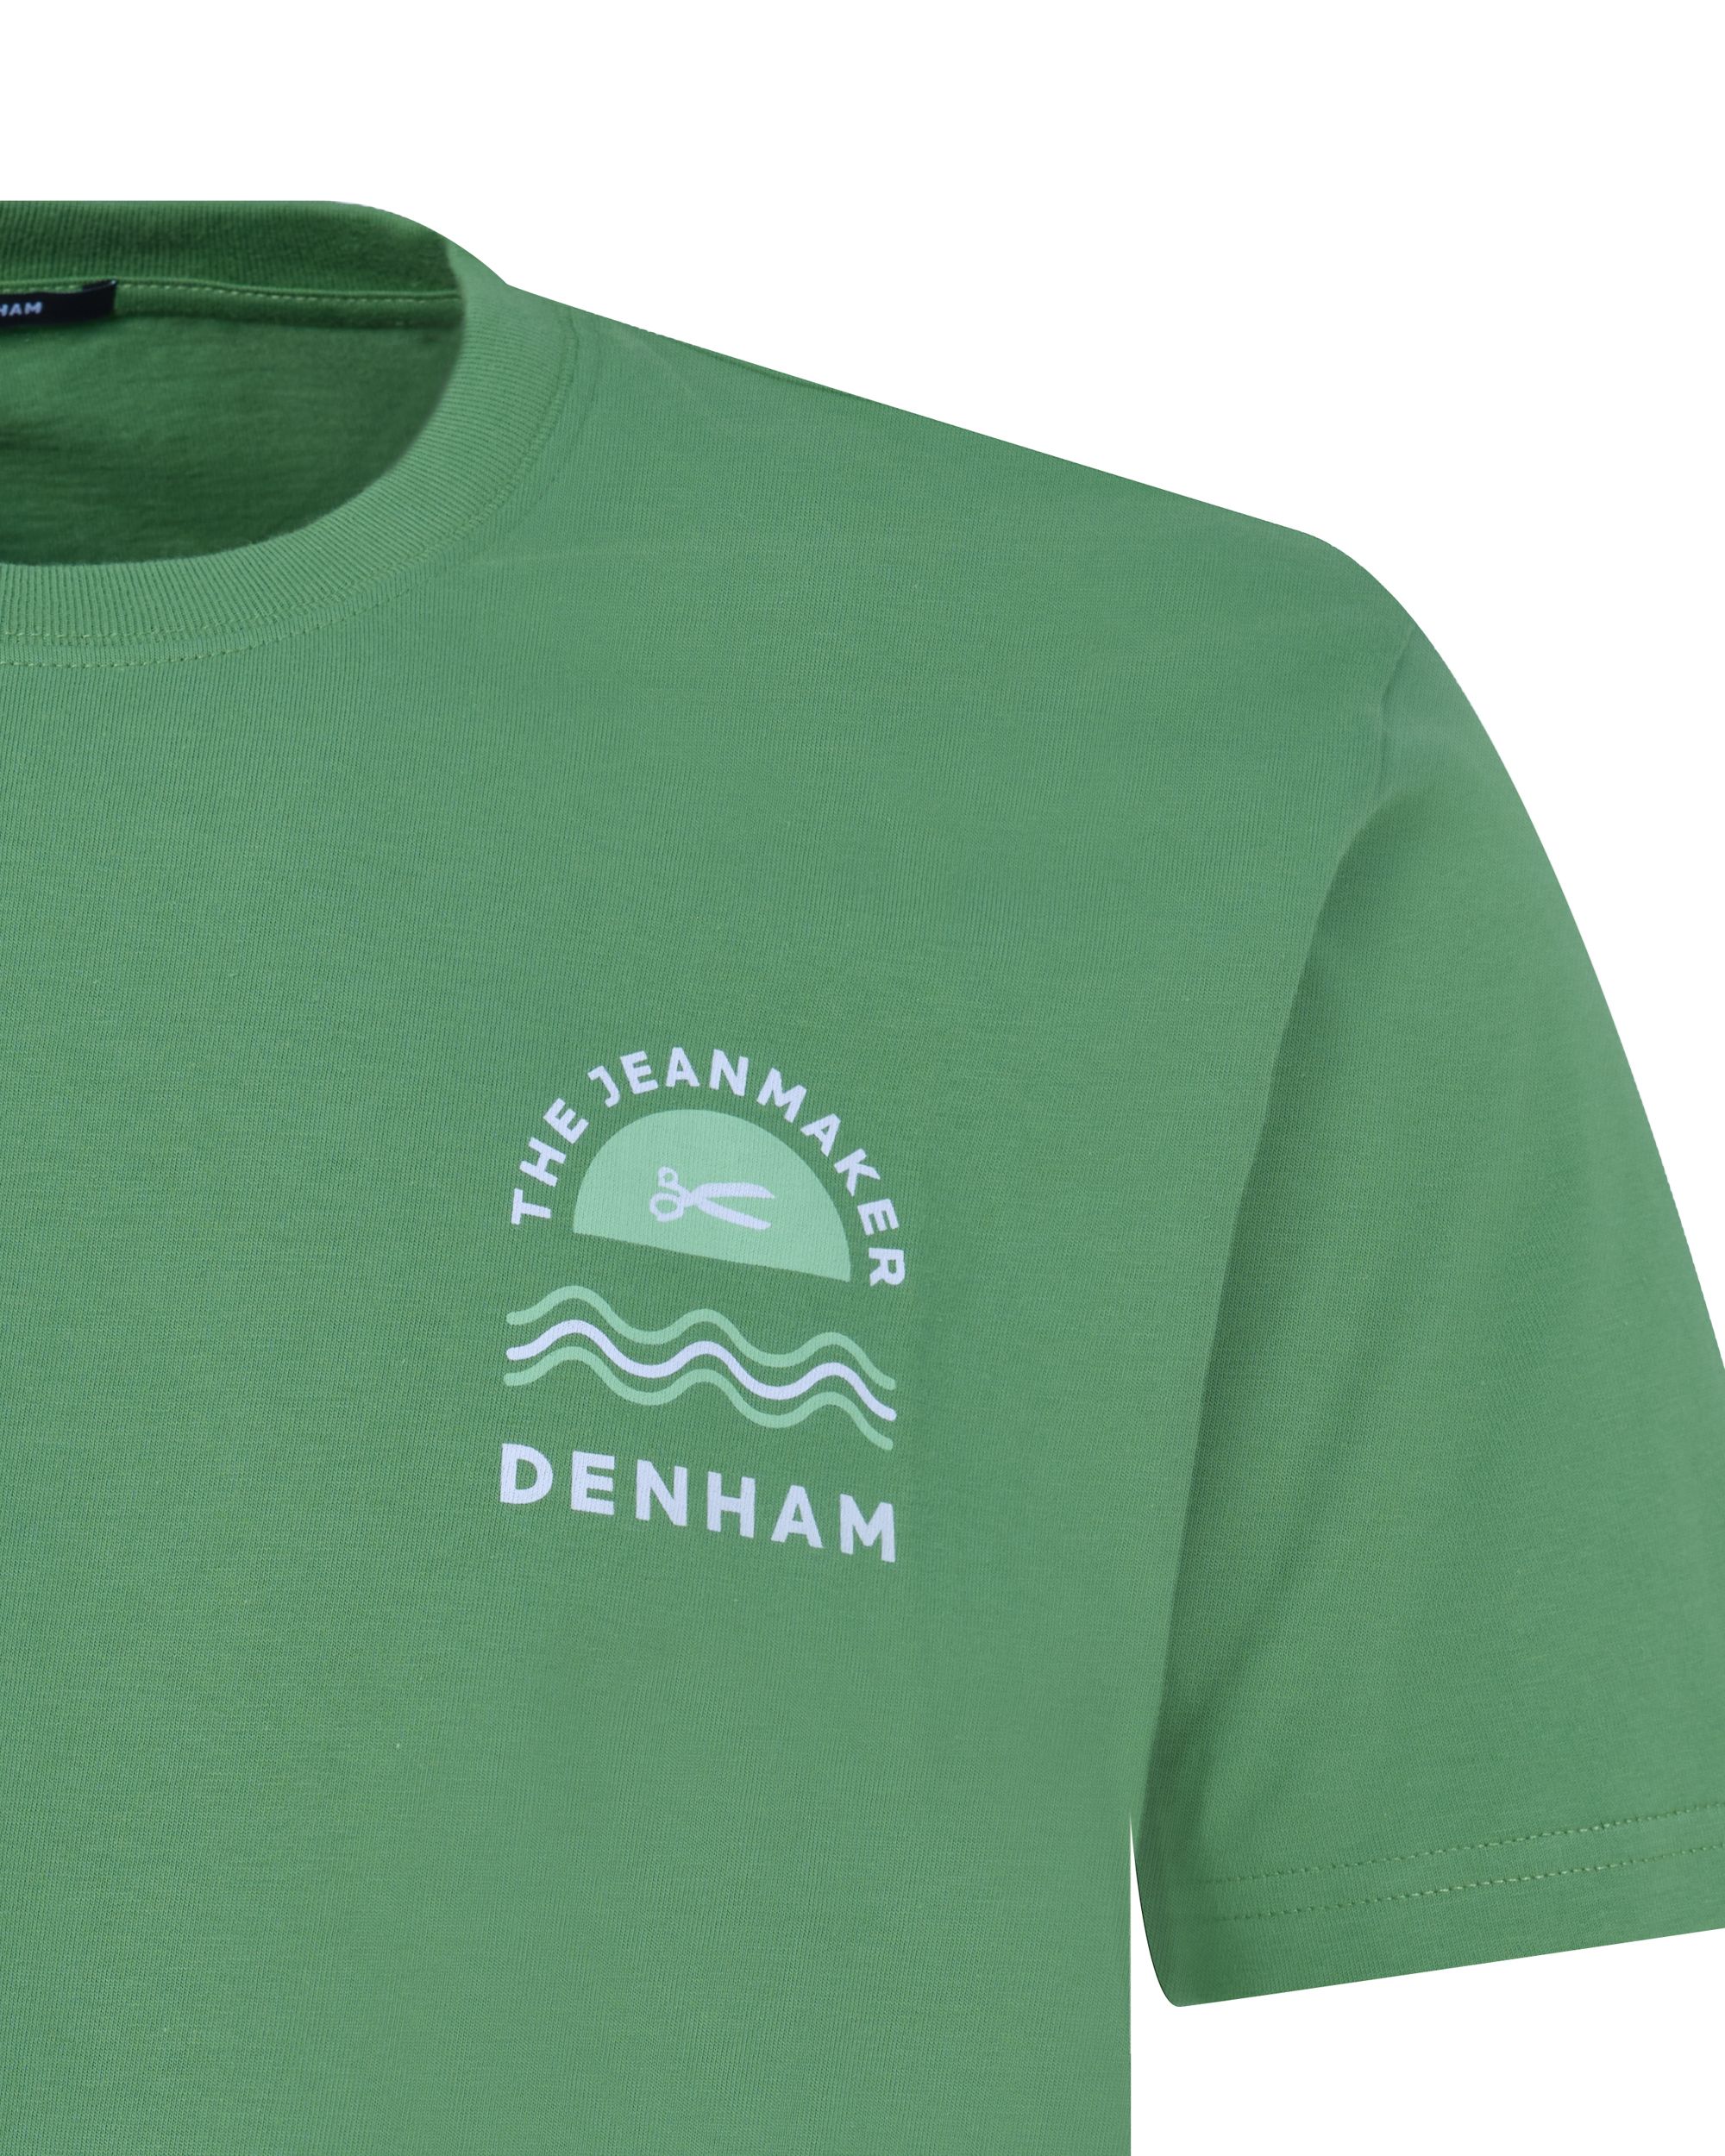 DENHAM Dorset Reg T-shirt KM Groen 089107-001-L